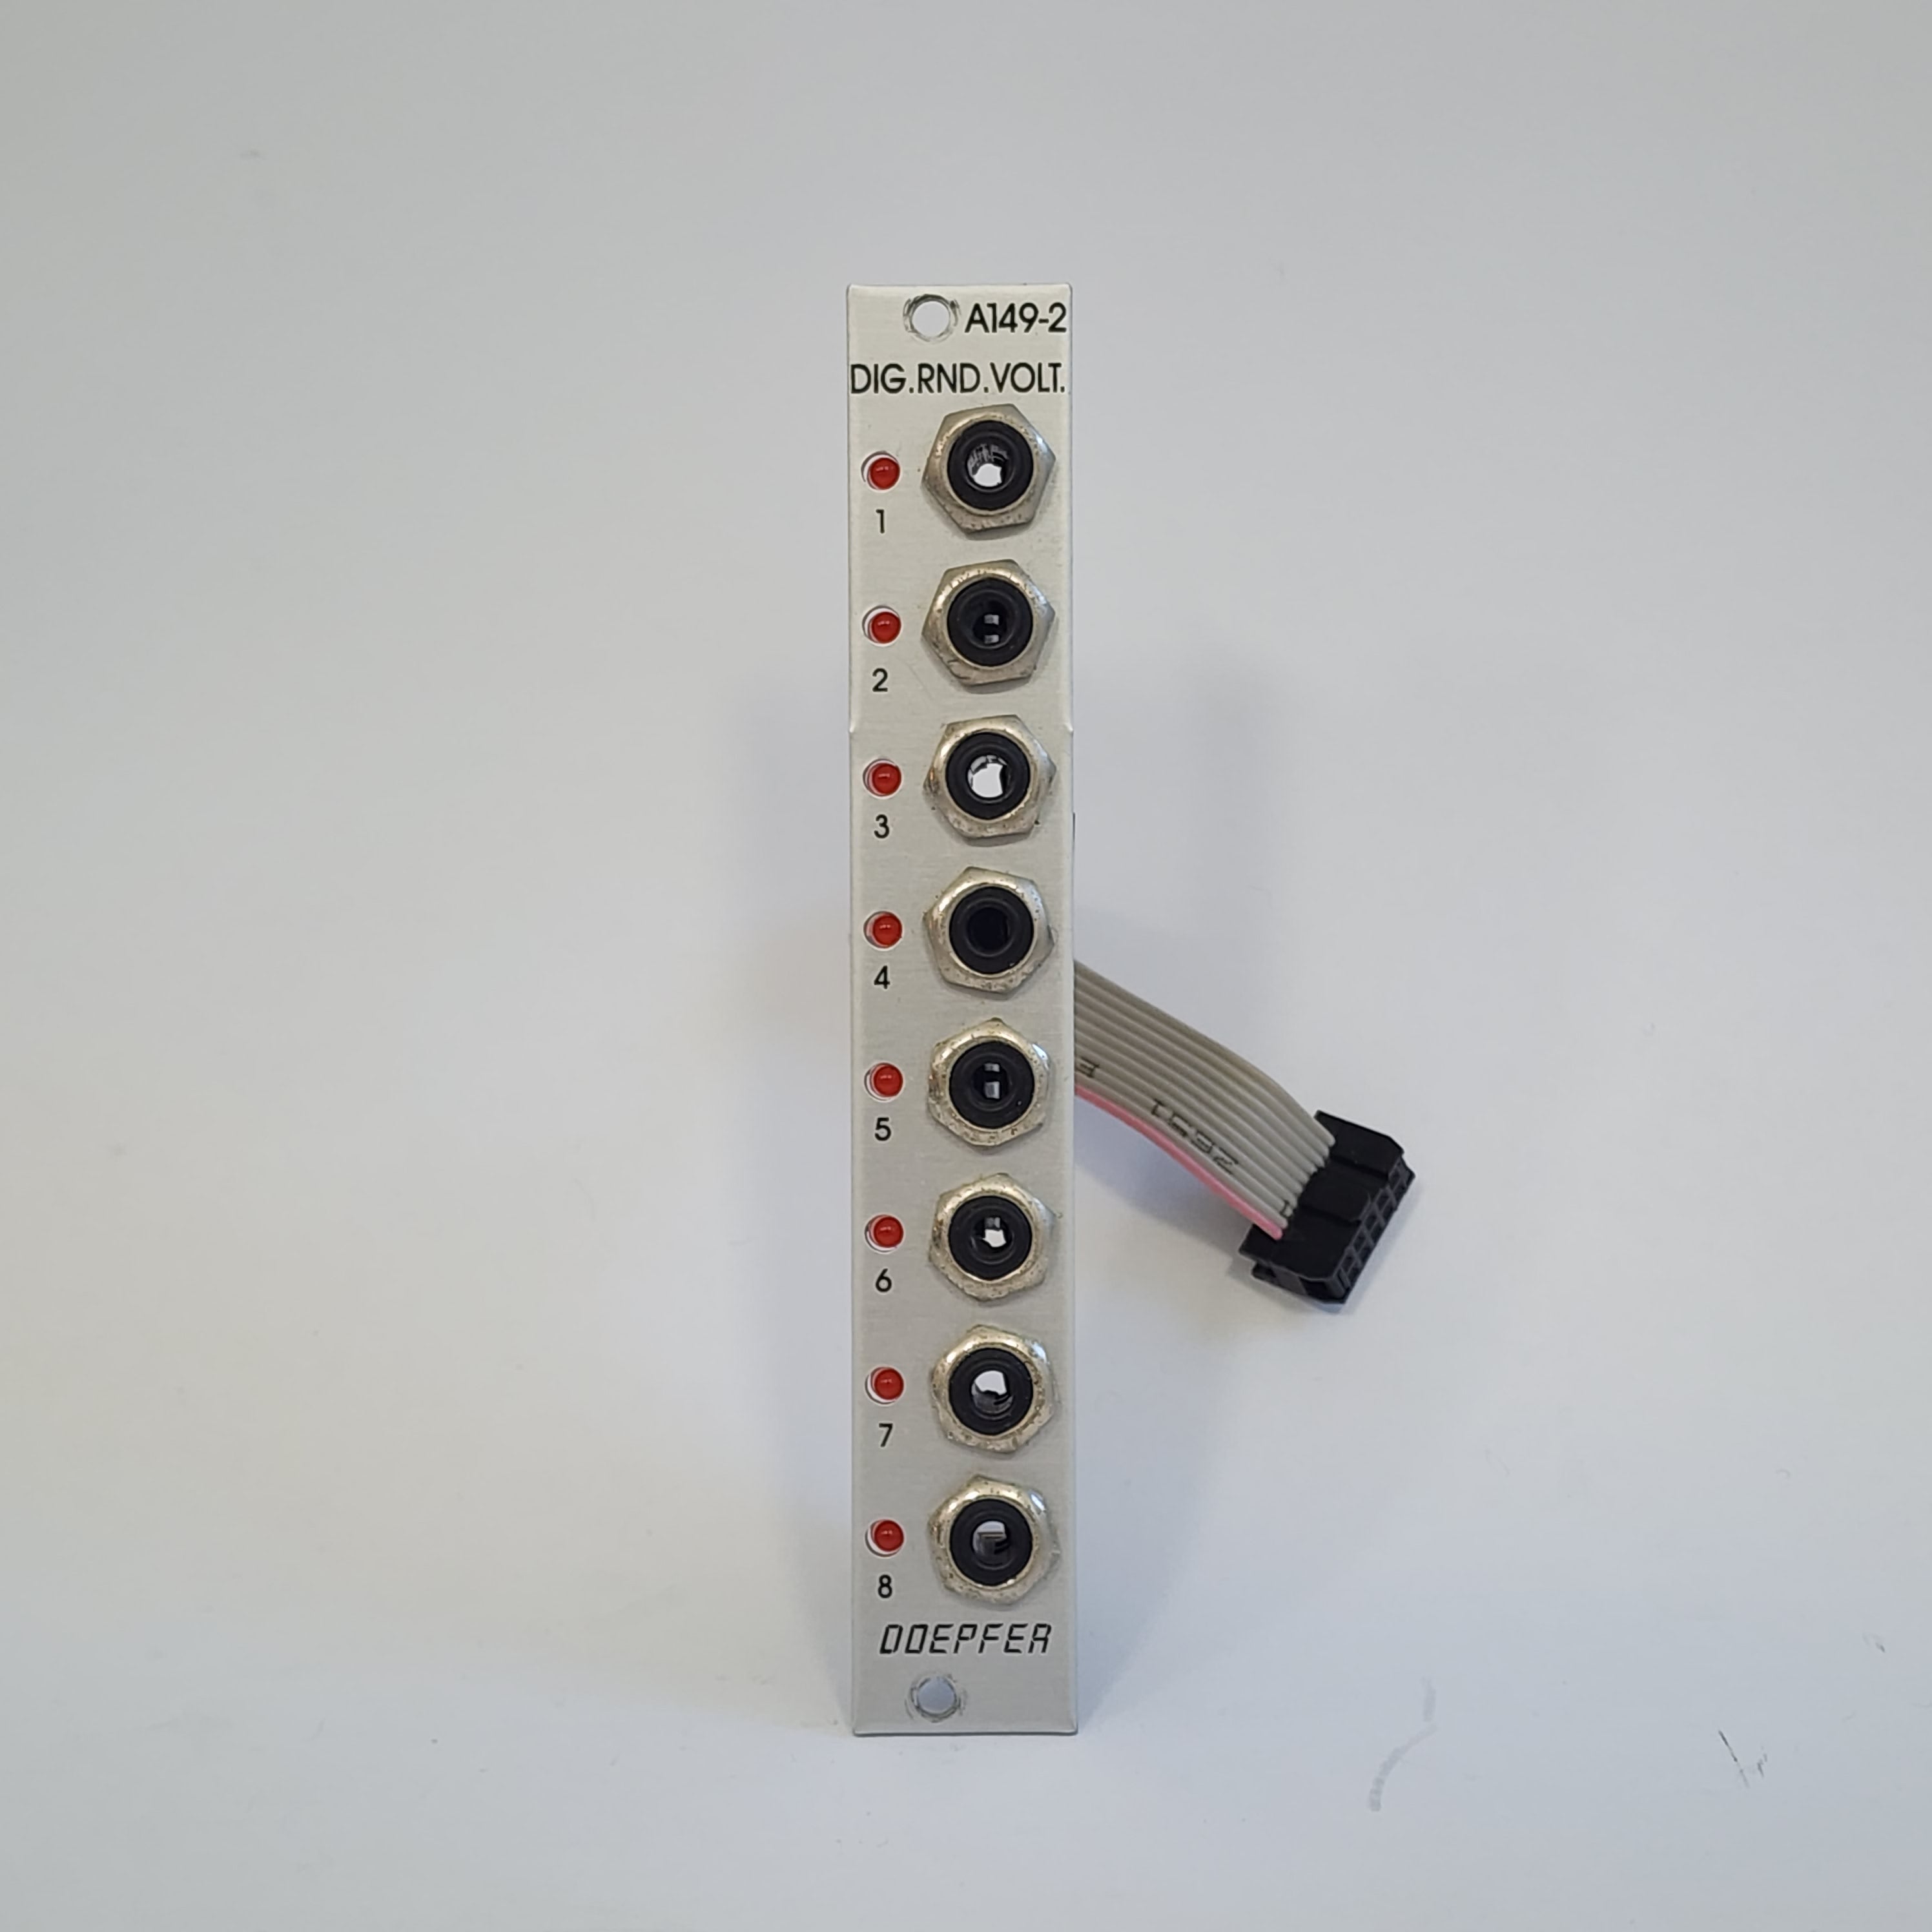 Doepfer A-149-2 Digital Random Voltages A149-1 Expander